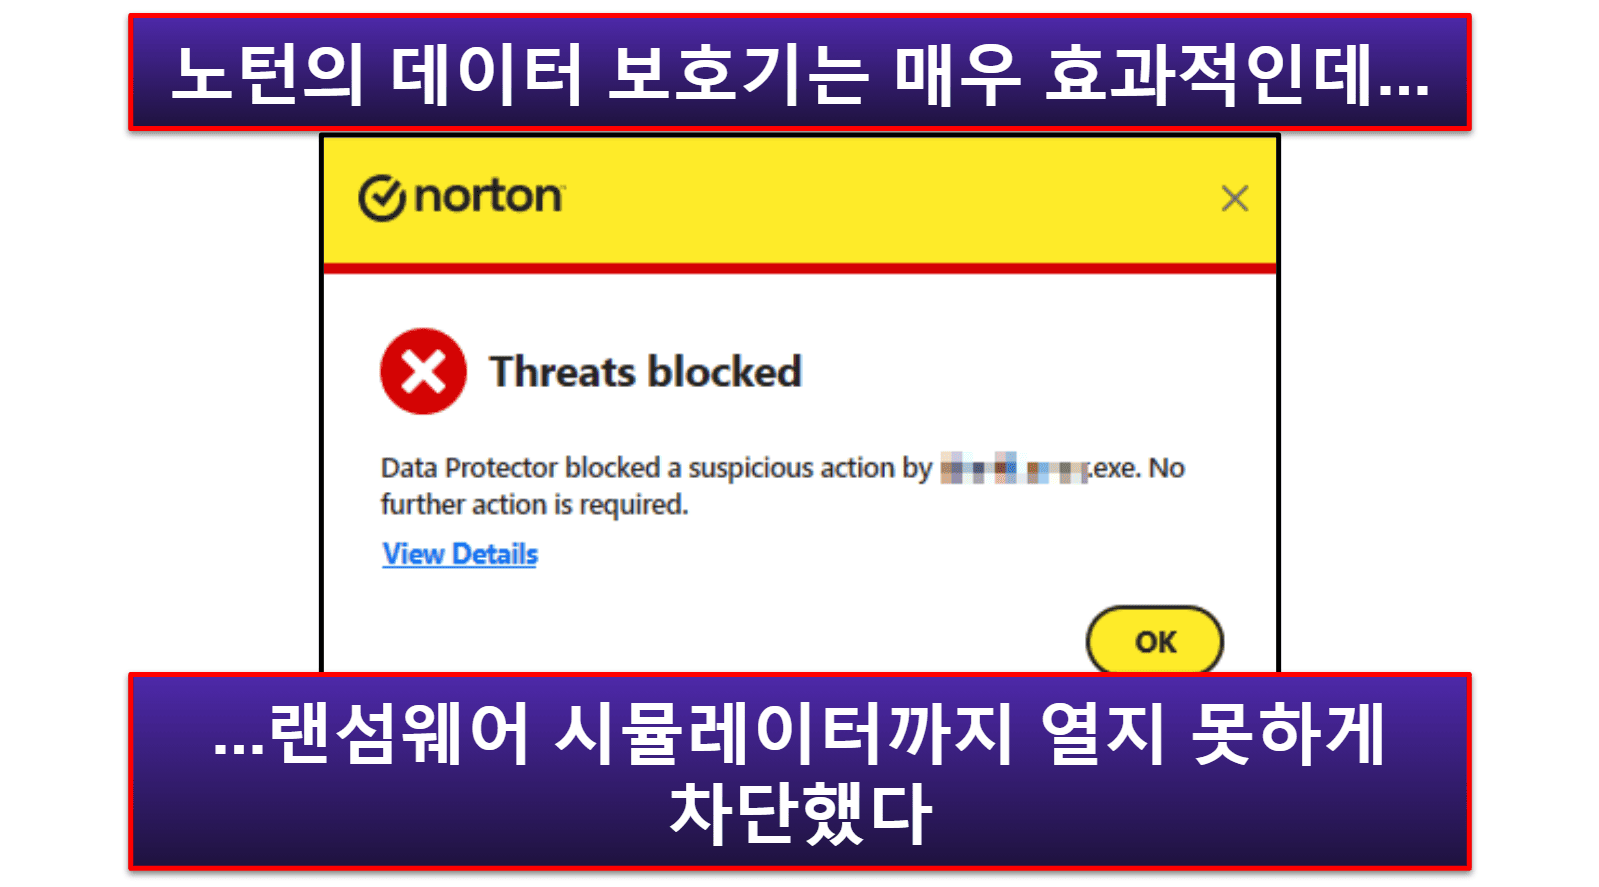 Norton의 보안 기능